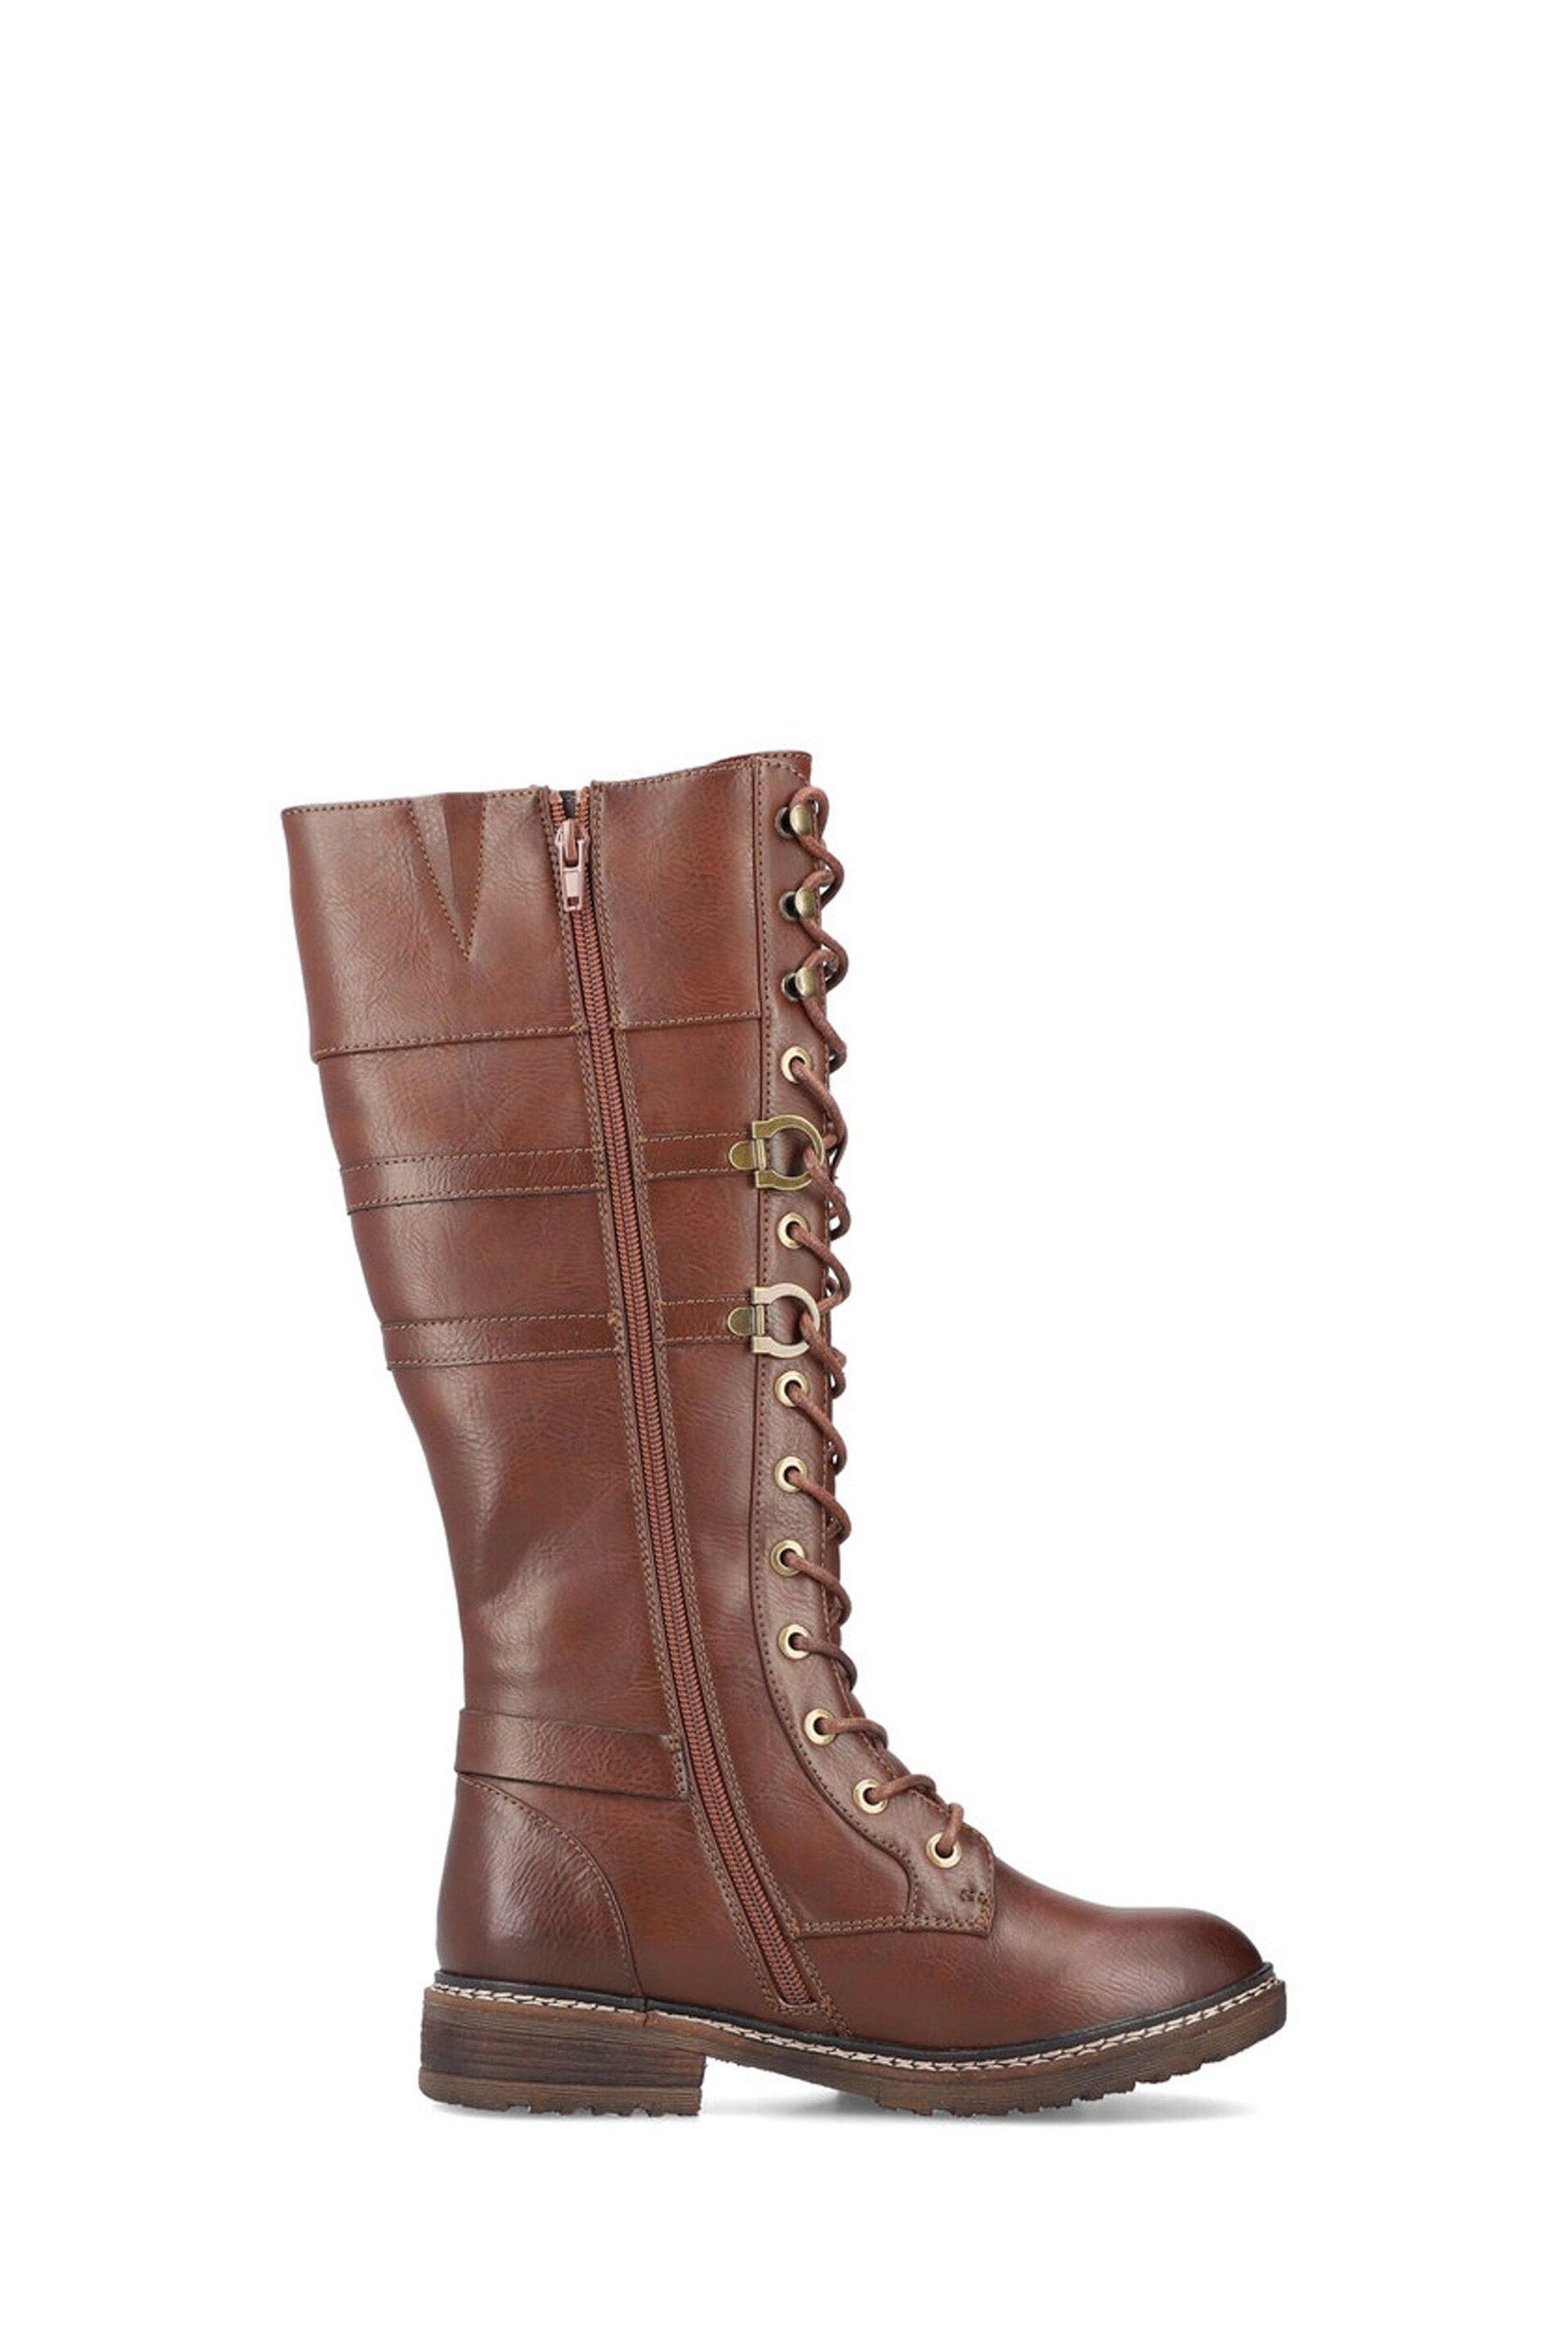 Rieker Womens Zipper Brown Boots - Image 1 of 8